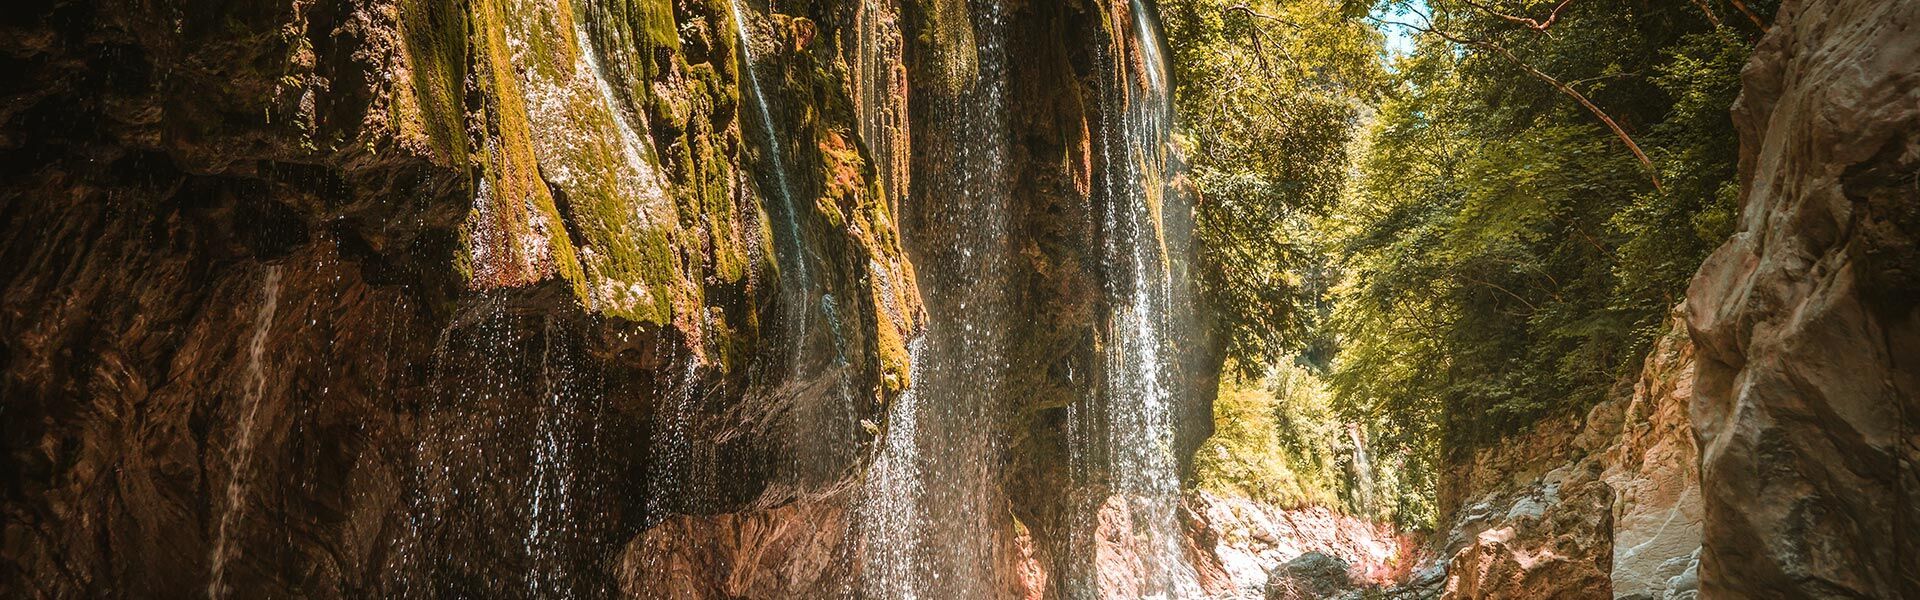 Panta vrechi, always raining waterfalls in central Greece